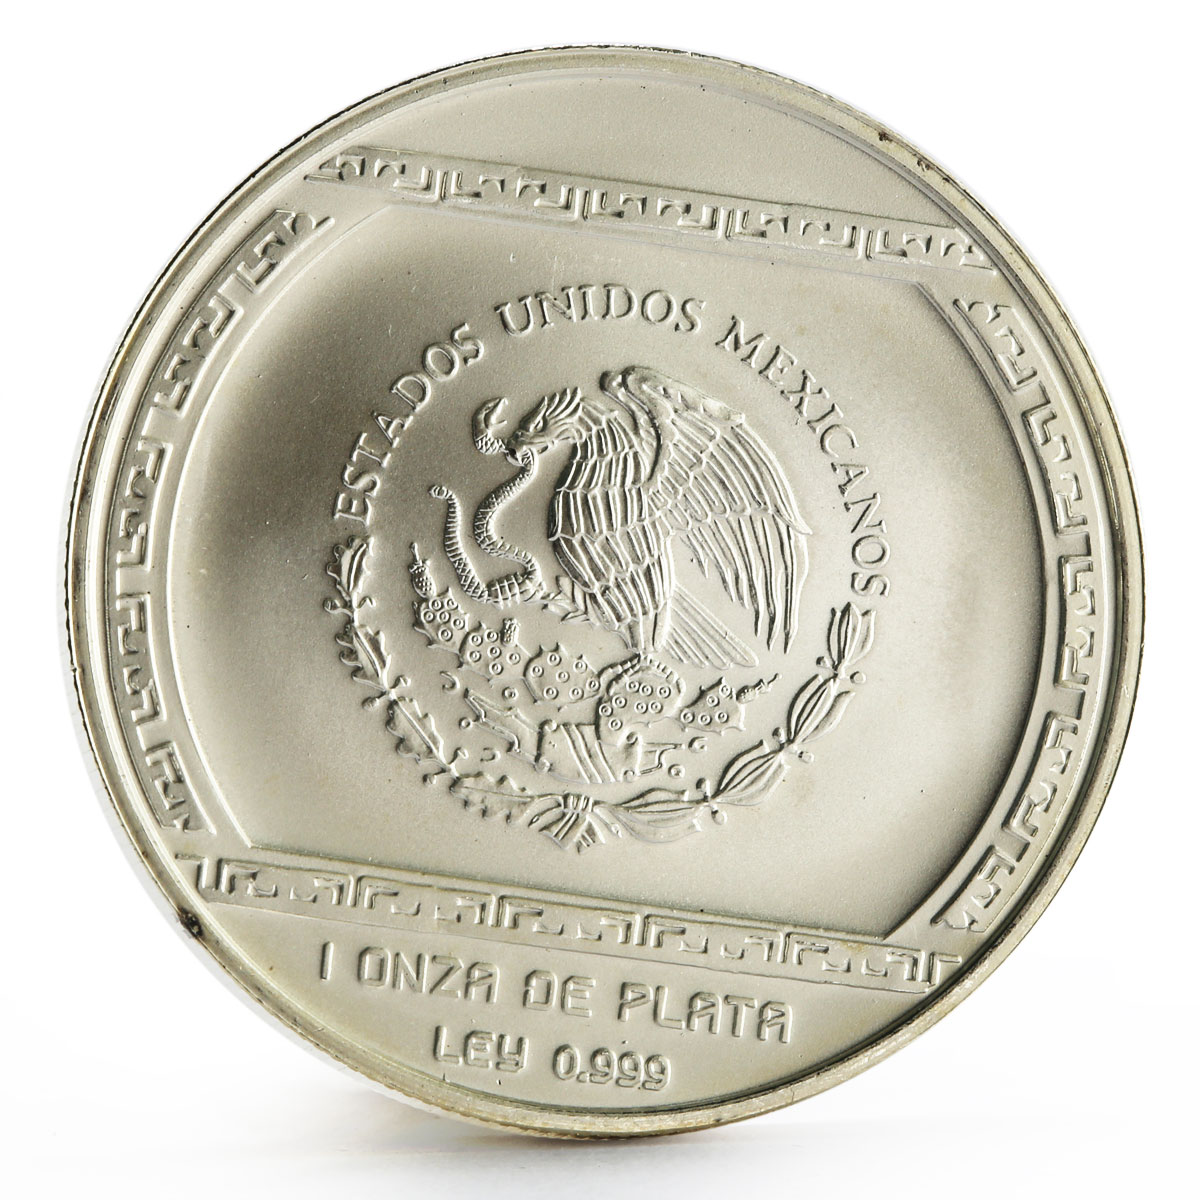 Mexico 5 pesos Precolombina series Palma Con Cocodrilo silver coin 1993